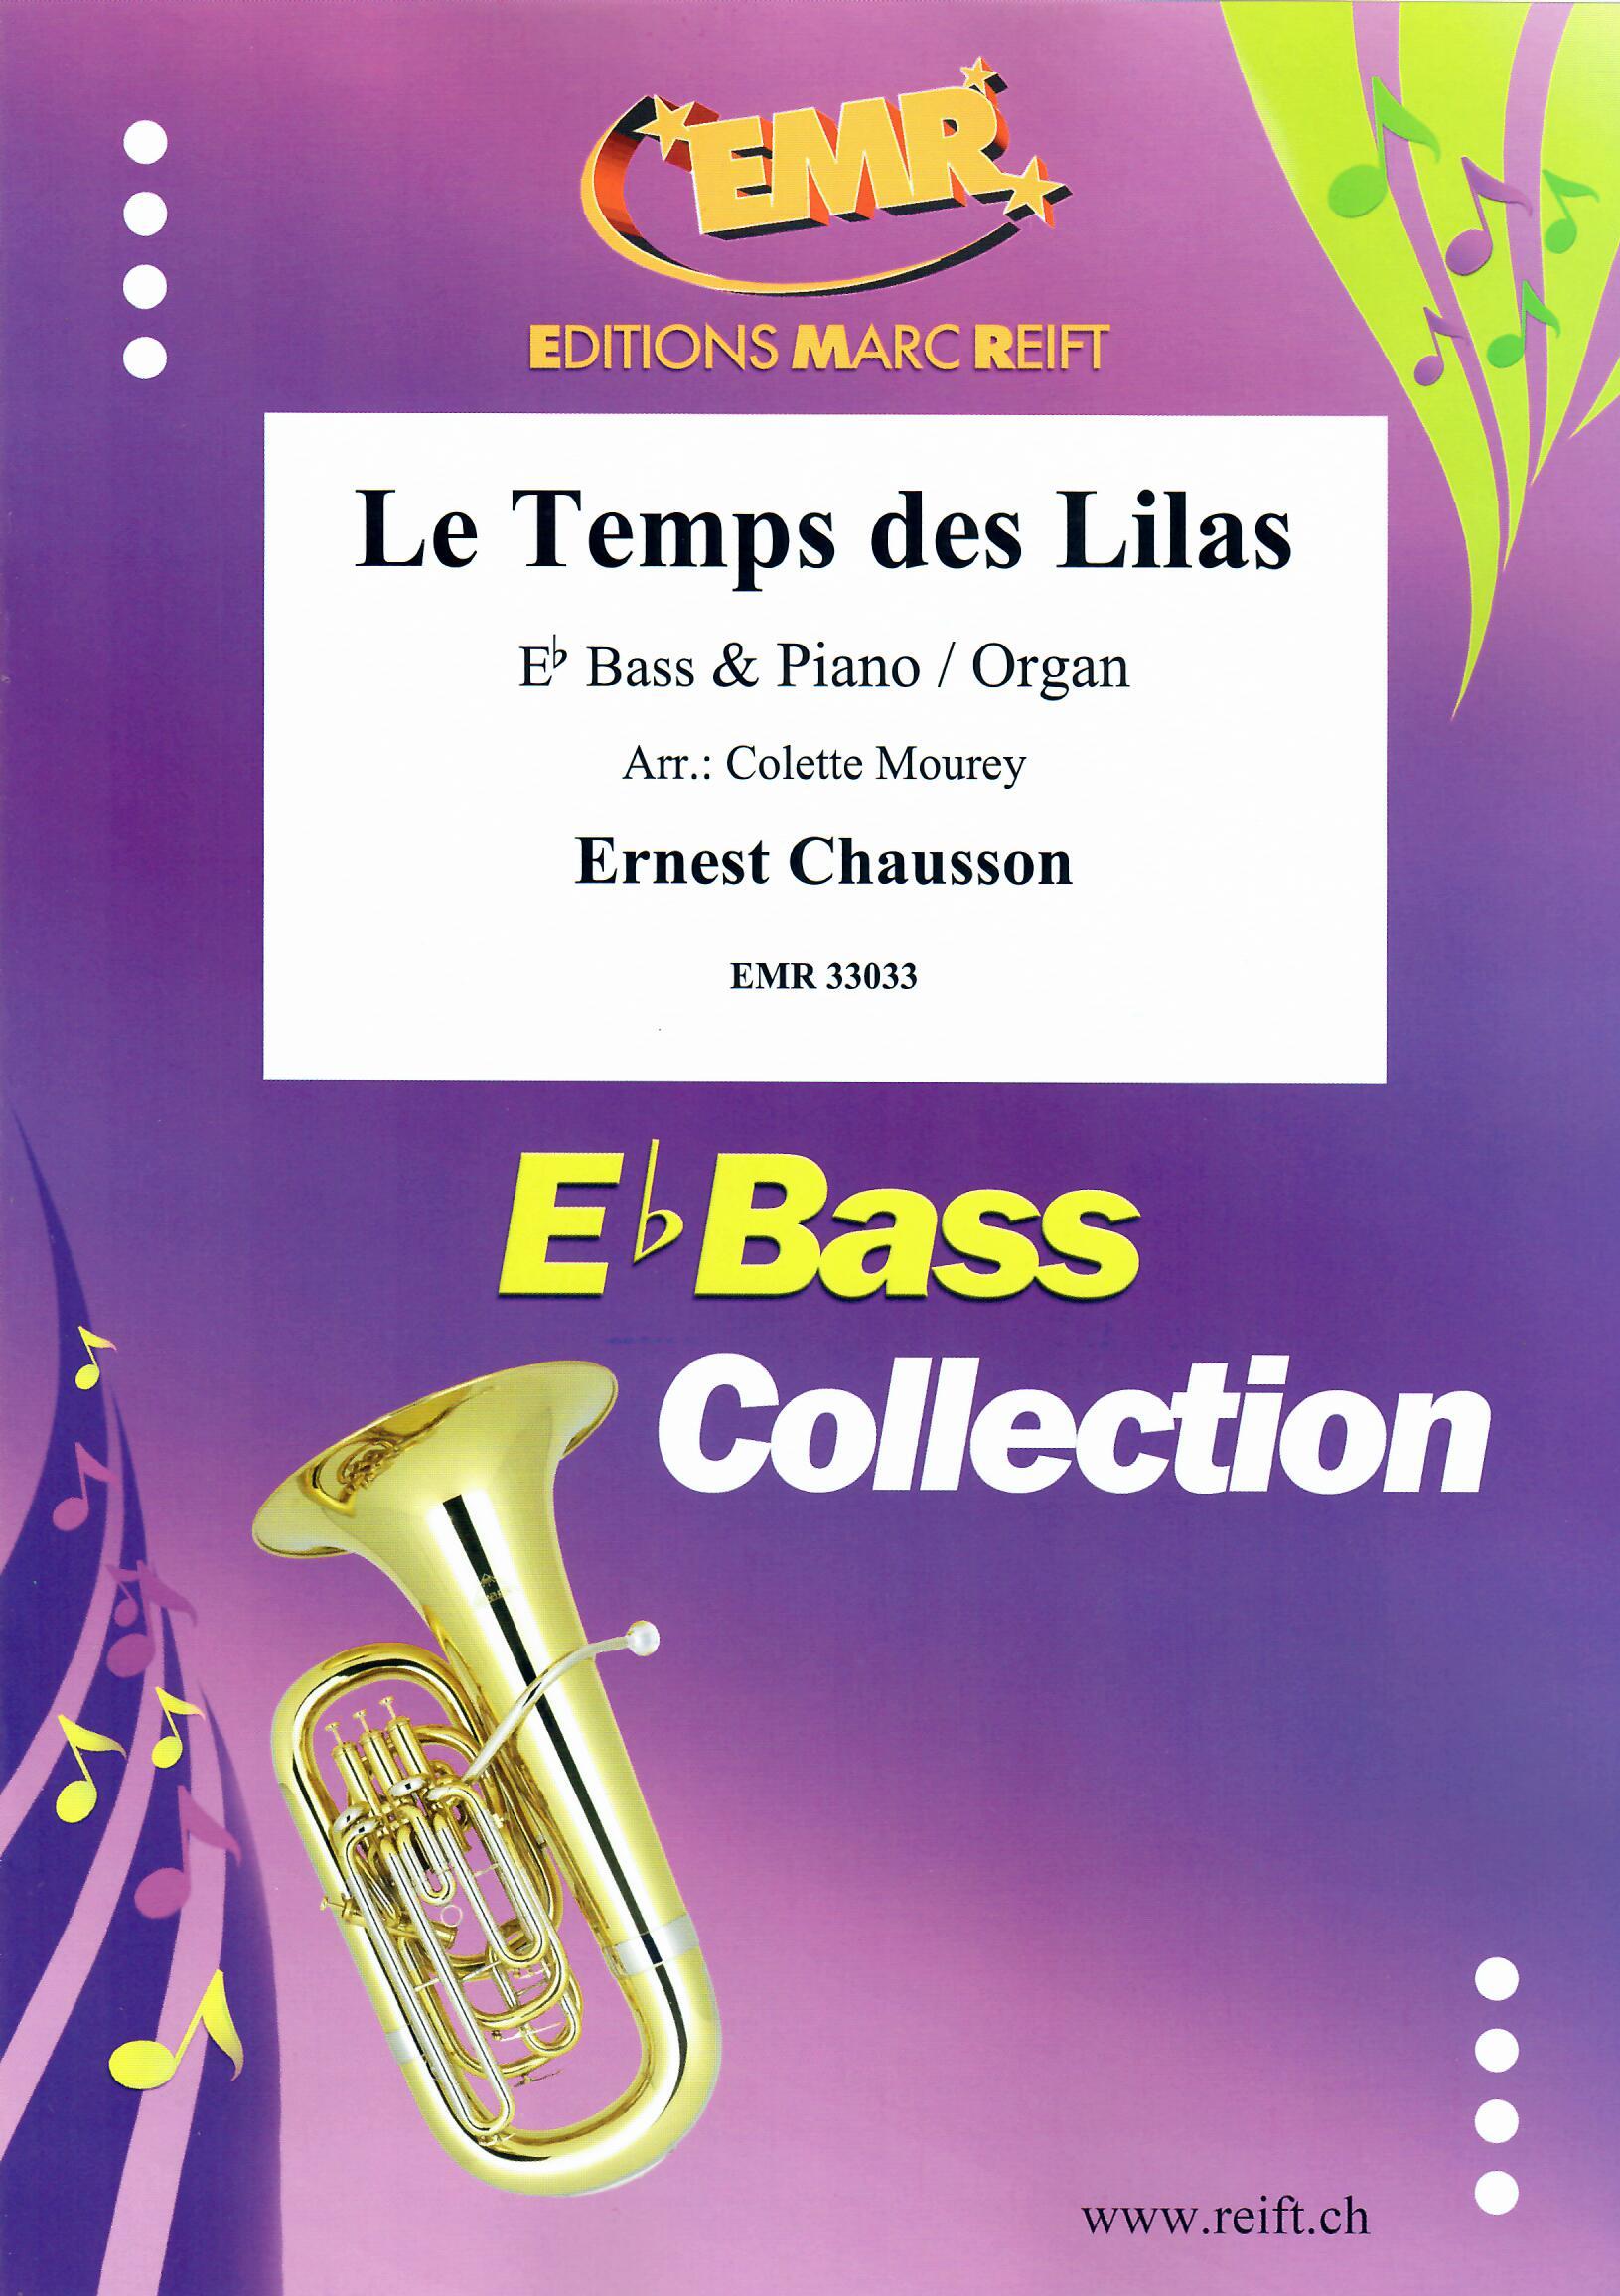 LE TEMPS DES LILAS, SOLOS - E♭. Bass